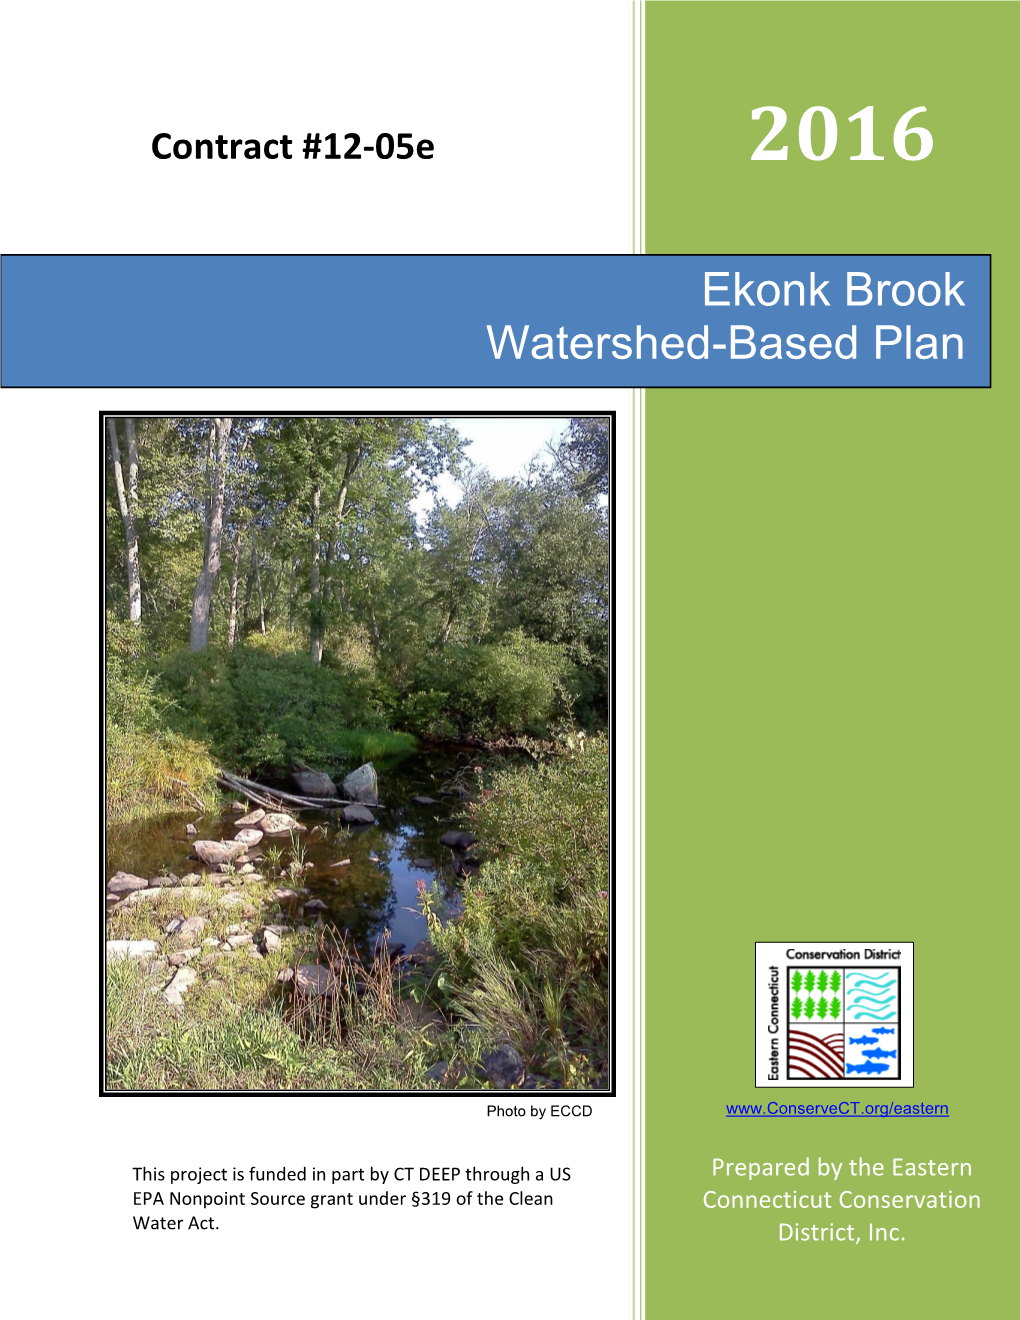 Ekonk Brook Watershed Based Plan 2016